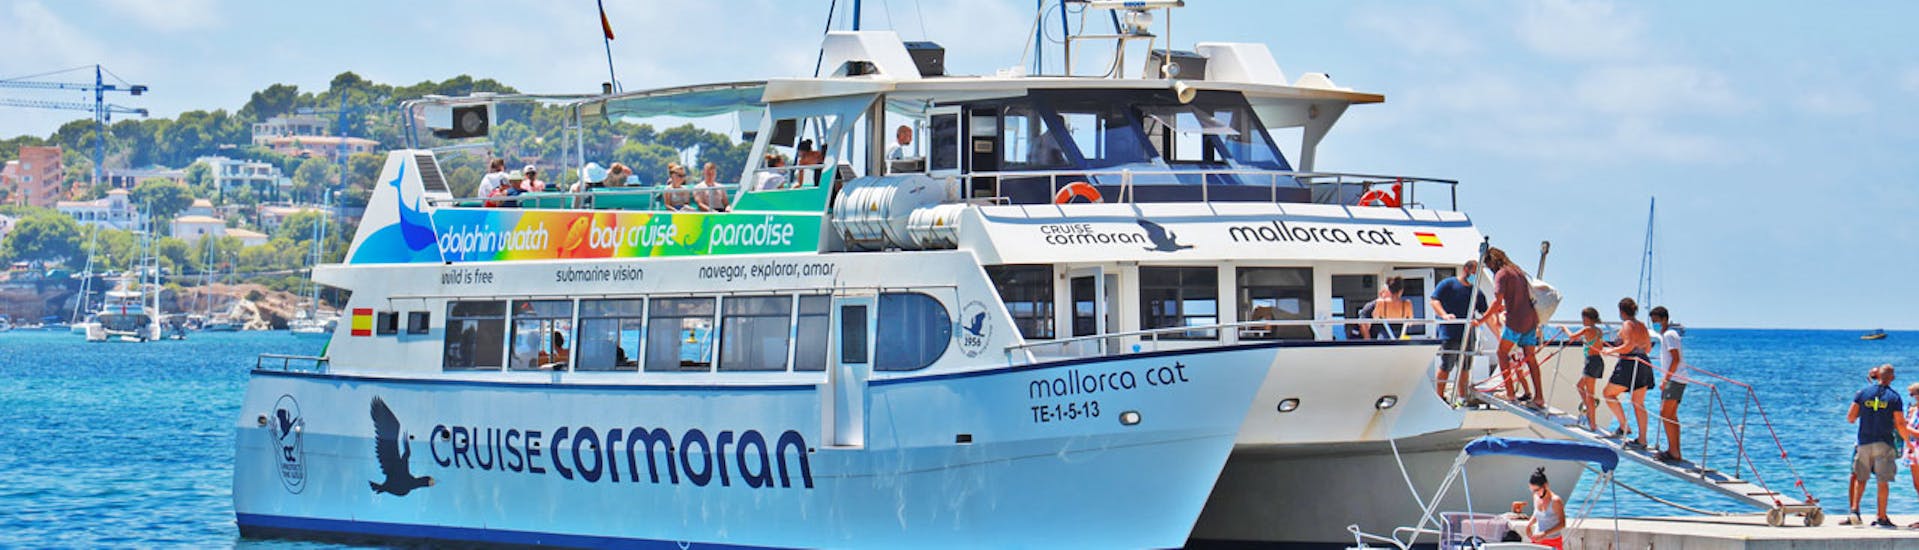 Balade en catamaran Santa Ponsa - Îles Malgrats avec Baignade & Visites touristiques.